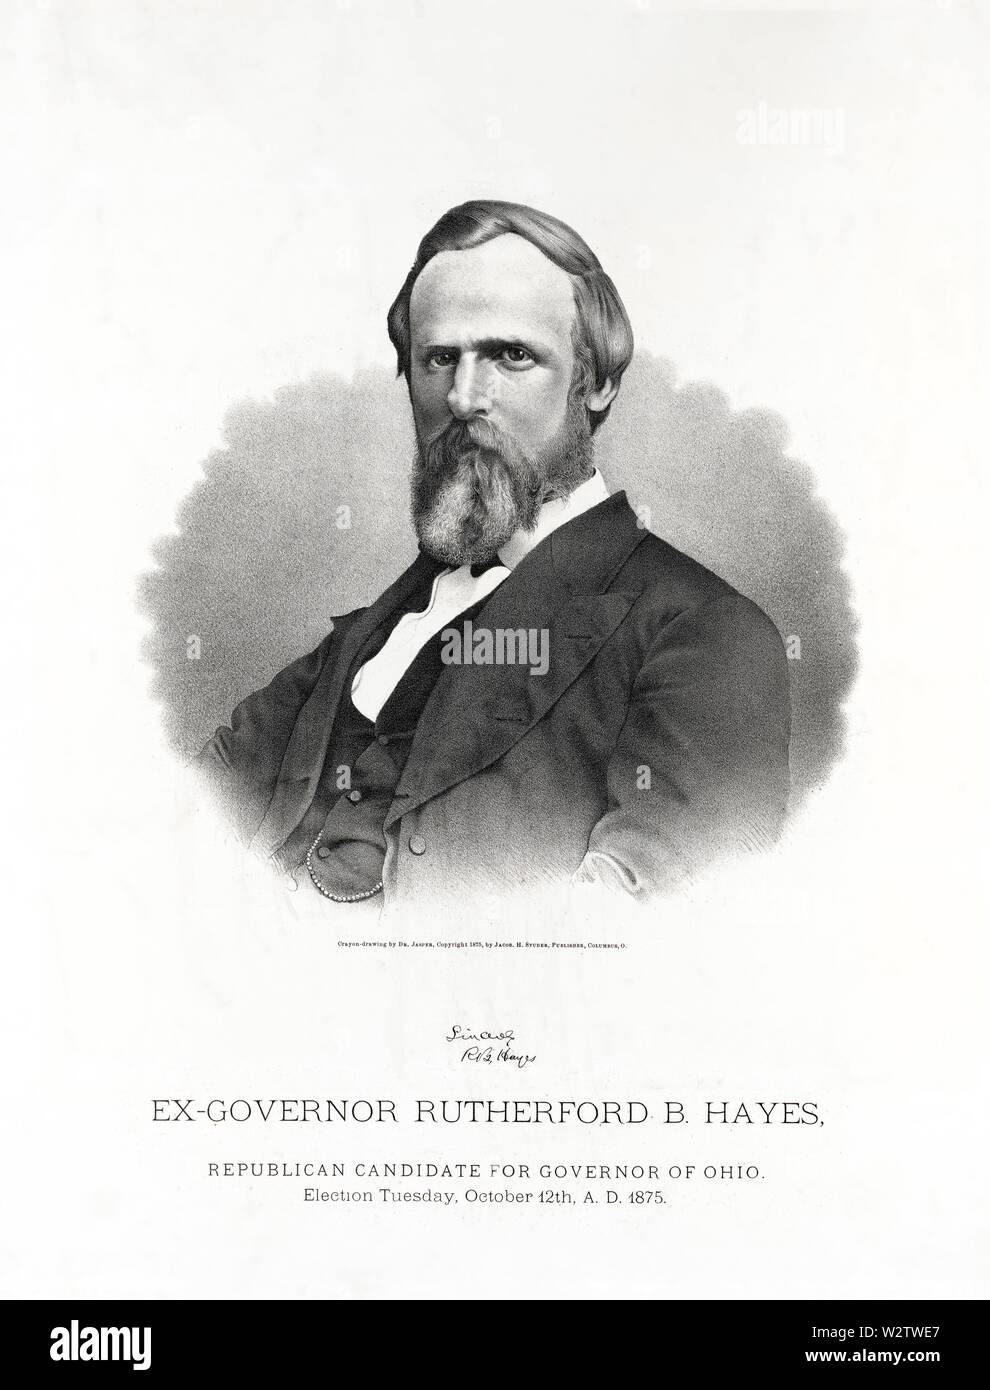 Ex-Governor Rutherford B. Hayes, der republikanische Kandidat für den Gouverneur von Ohio, Wahl Dienstag, Oktober 12th, 1875 A.D., Buntstift - Zeichnung von Dr. Jasper, von Jacob H. Studer, Columbus, OH, 1875 veröffentlicht. Stockfoto